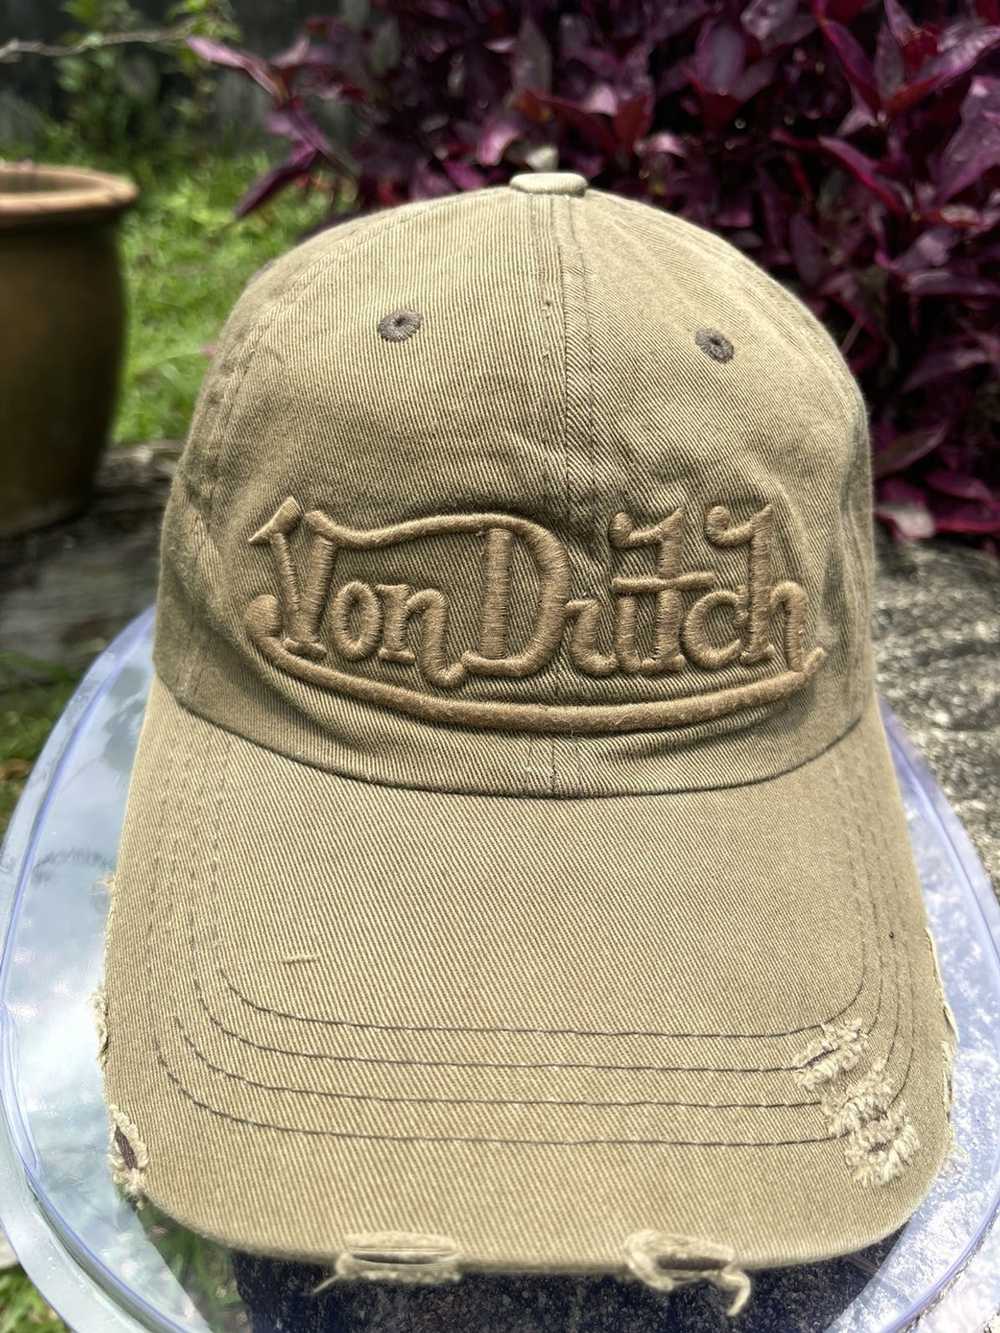 Von Dutch VON DUTCH DISTRESSED HAT - image 2